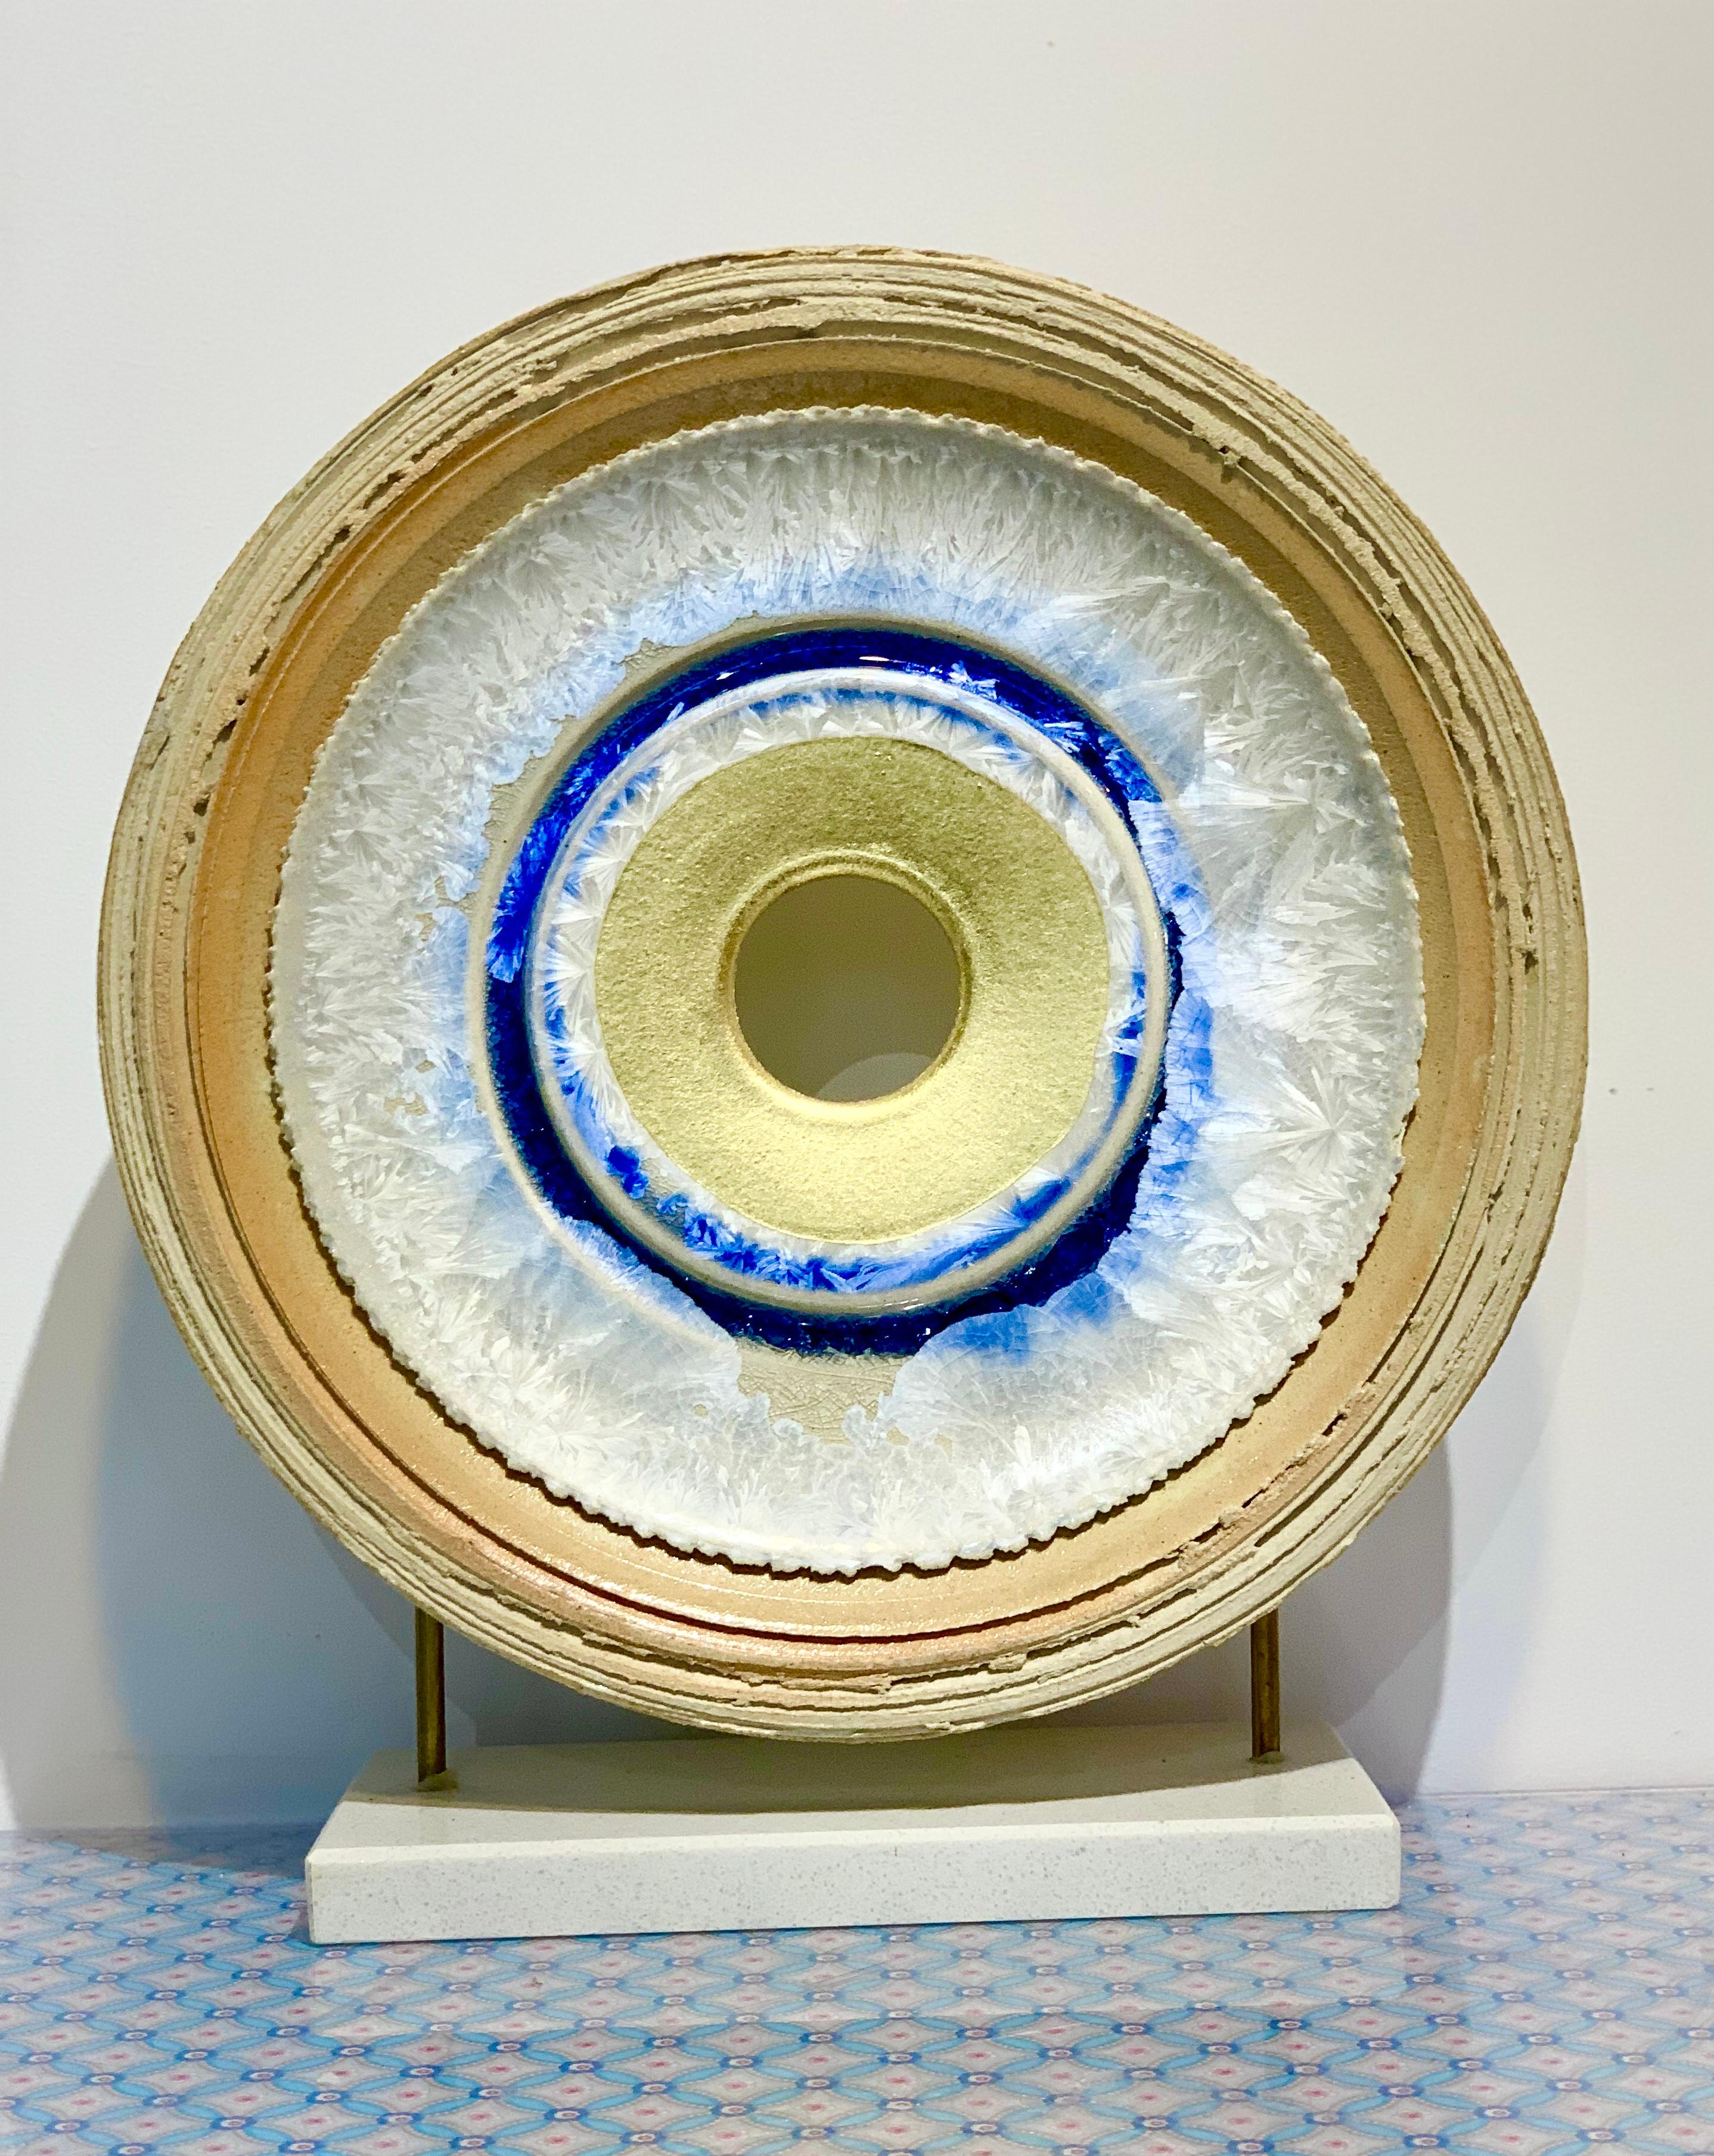 Eisblaue Creatio Continua von Kuno Vollet - goldene, blaue runde Keramikskulptur